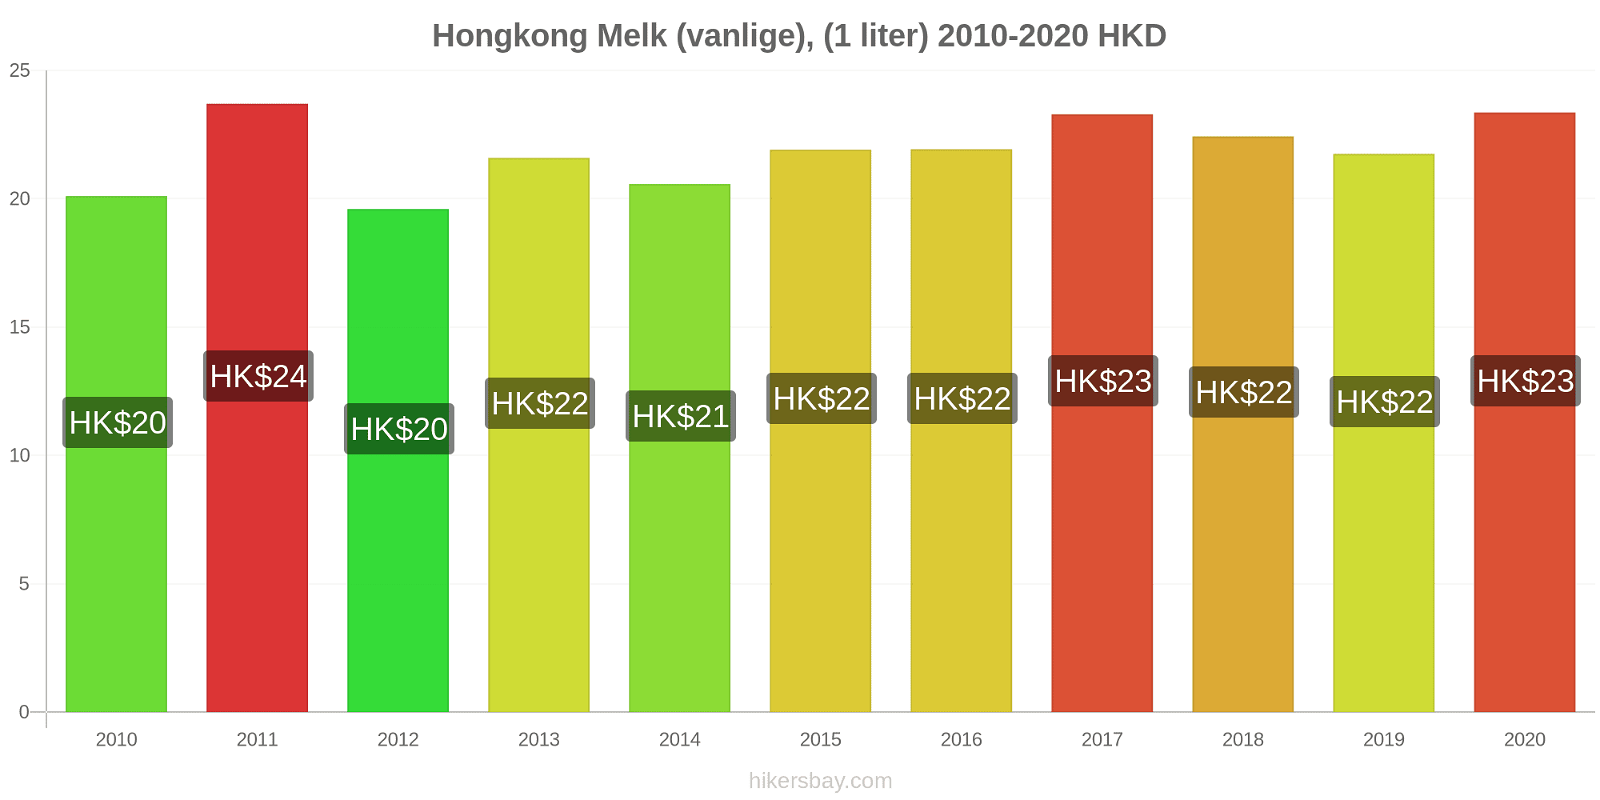 Hongkong prisendringer Melk (vanlige), (1 liter) hikersbay.com